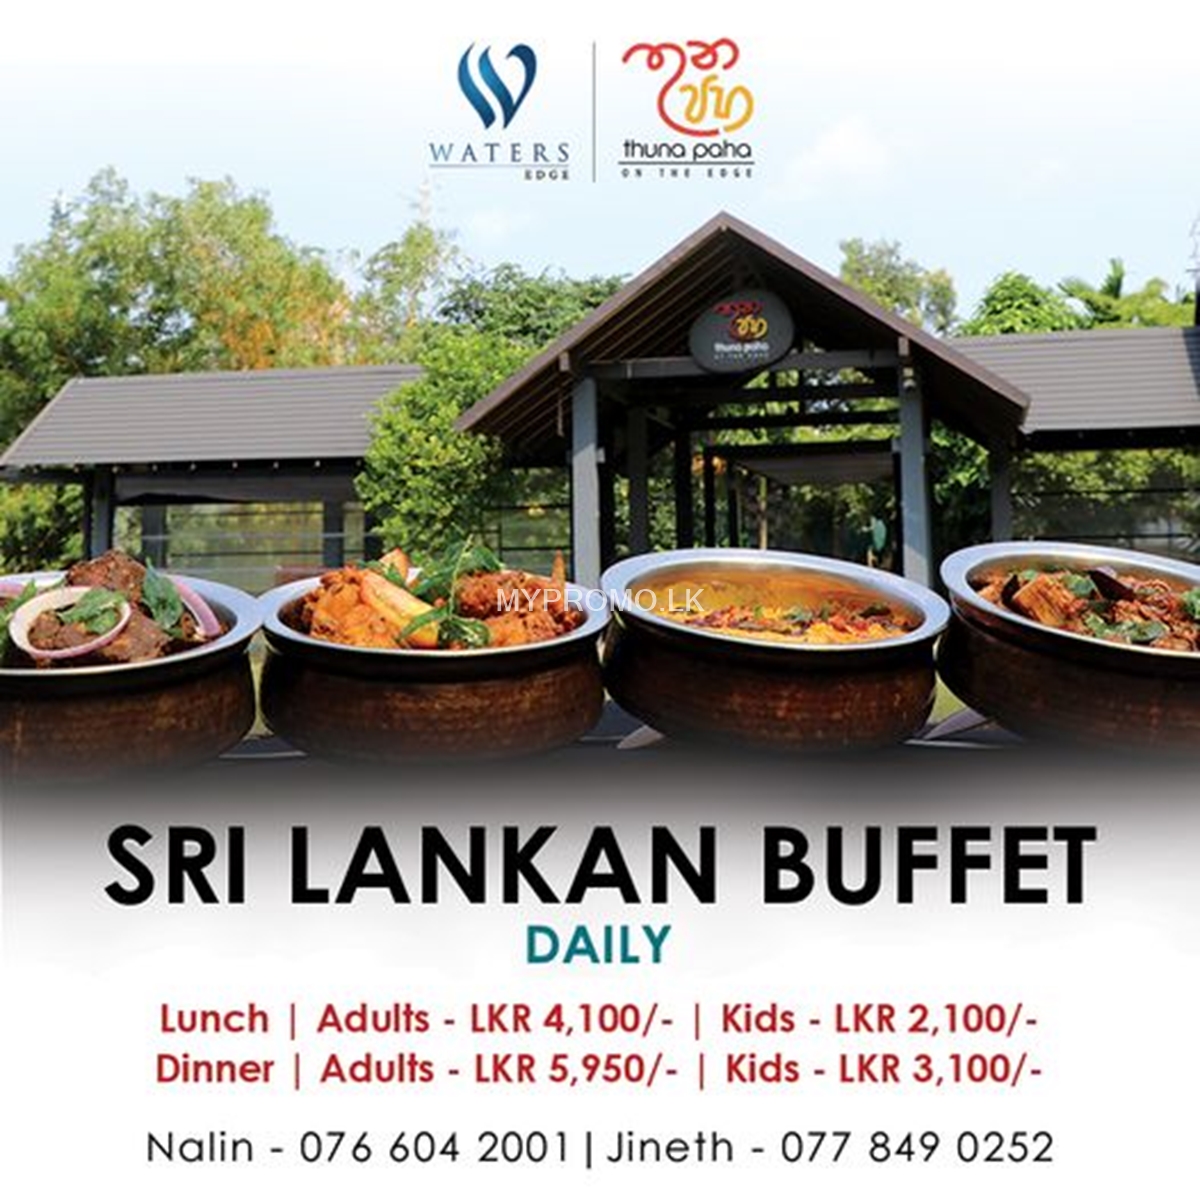 Sri lankan Buffet at Thuna Paha Restaurant, Waters Edge